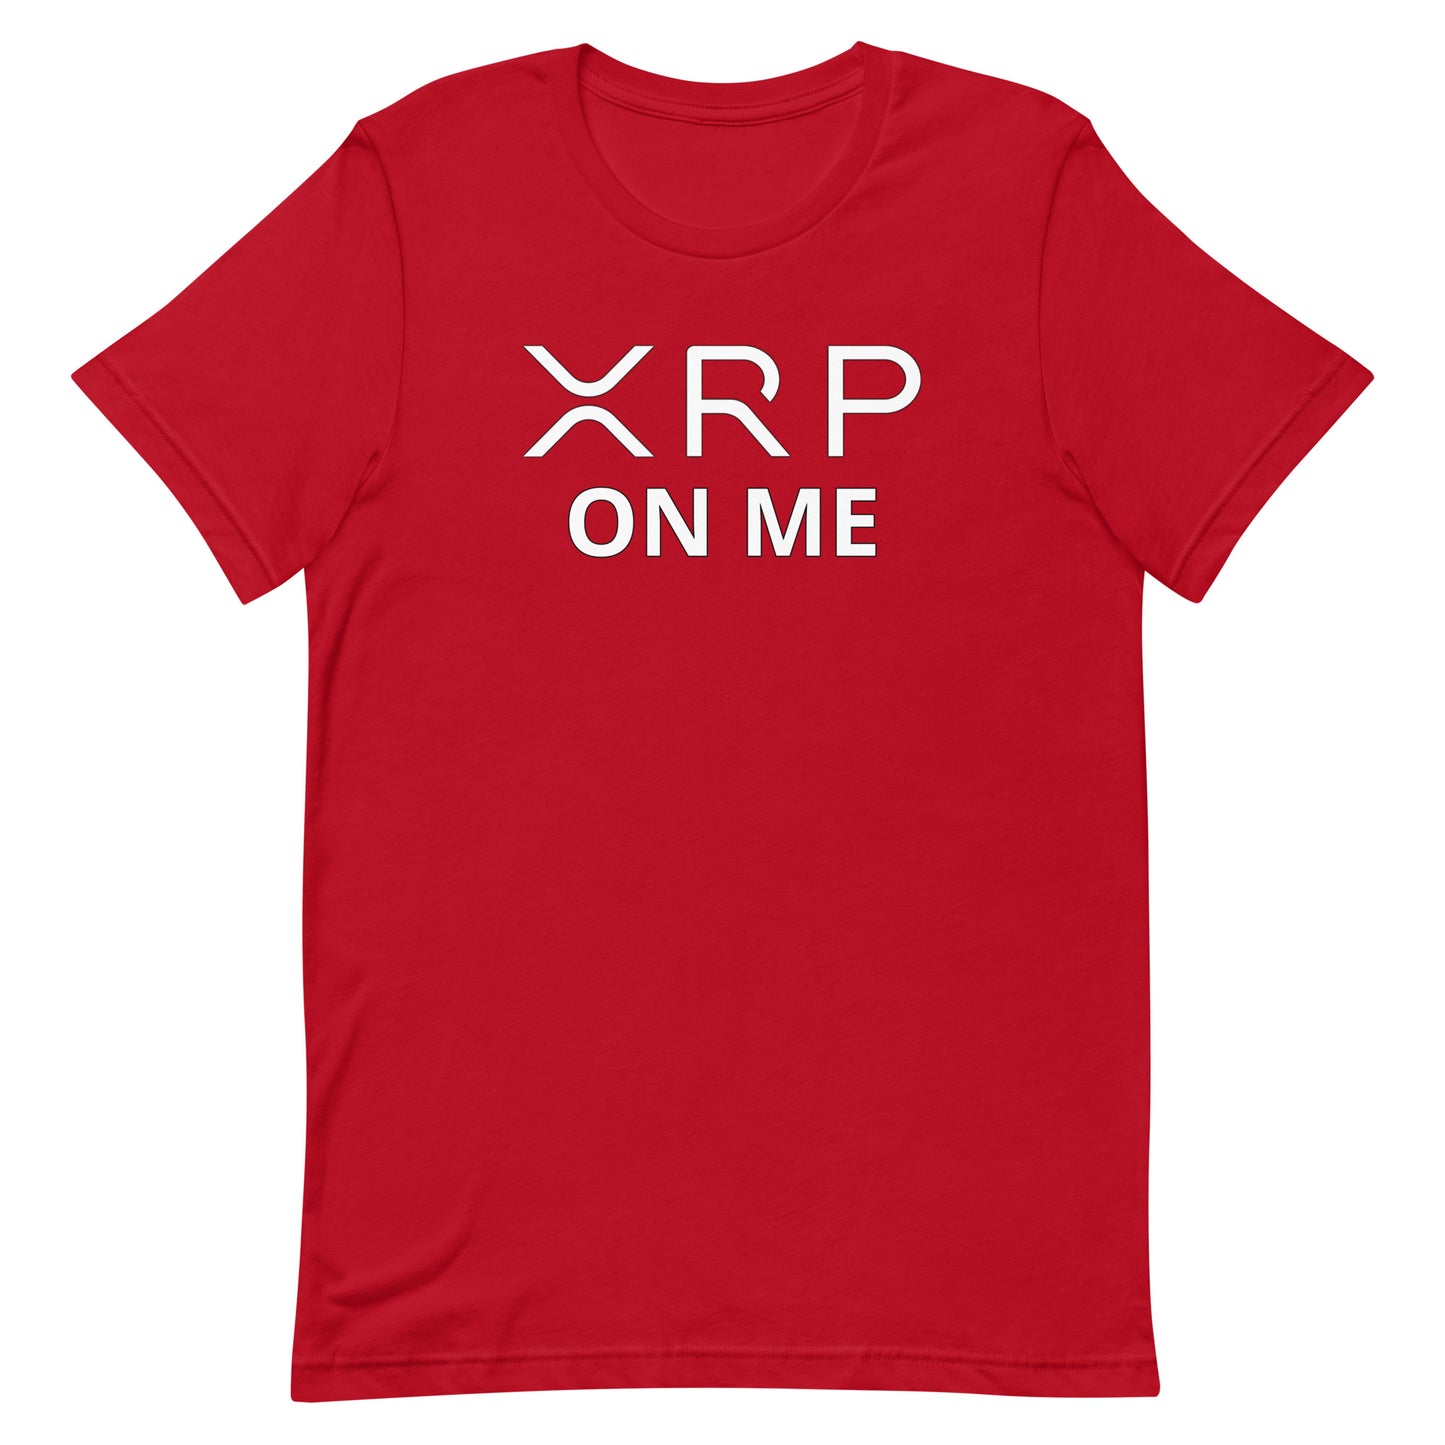 XRP ON ME